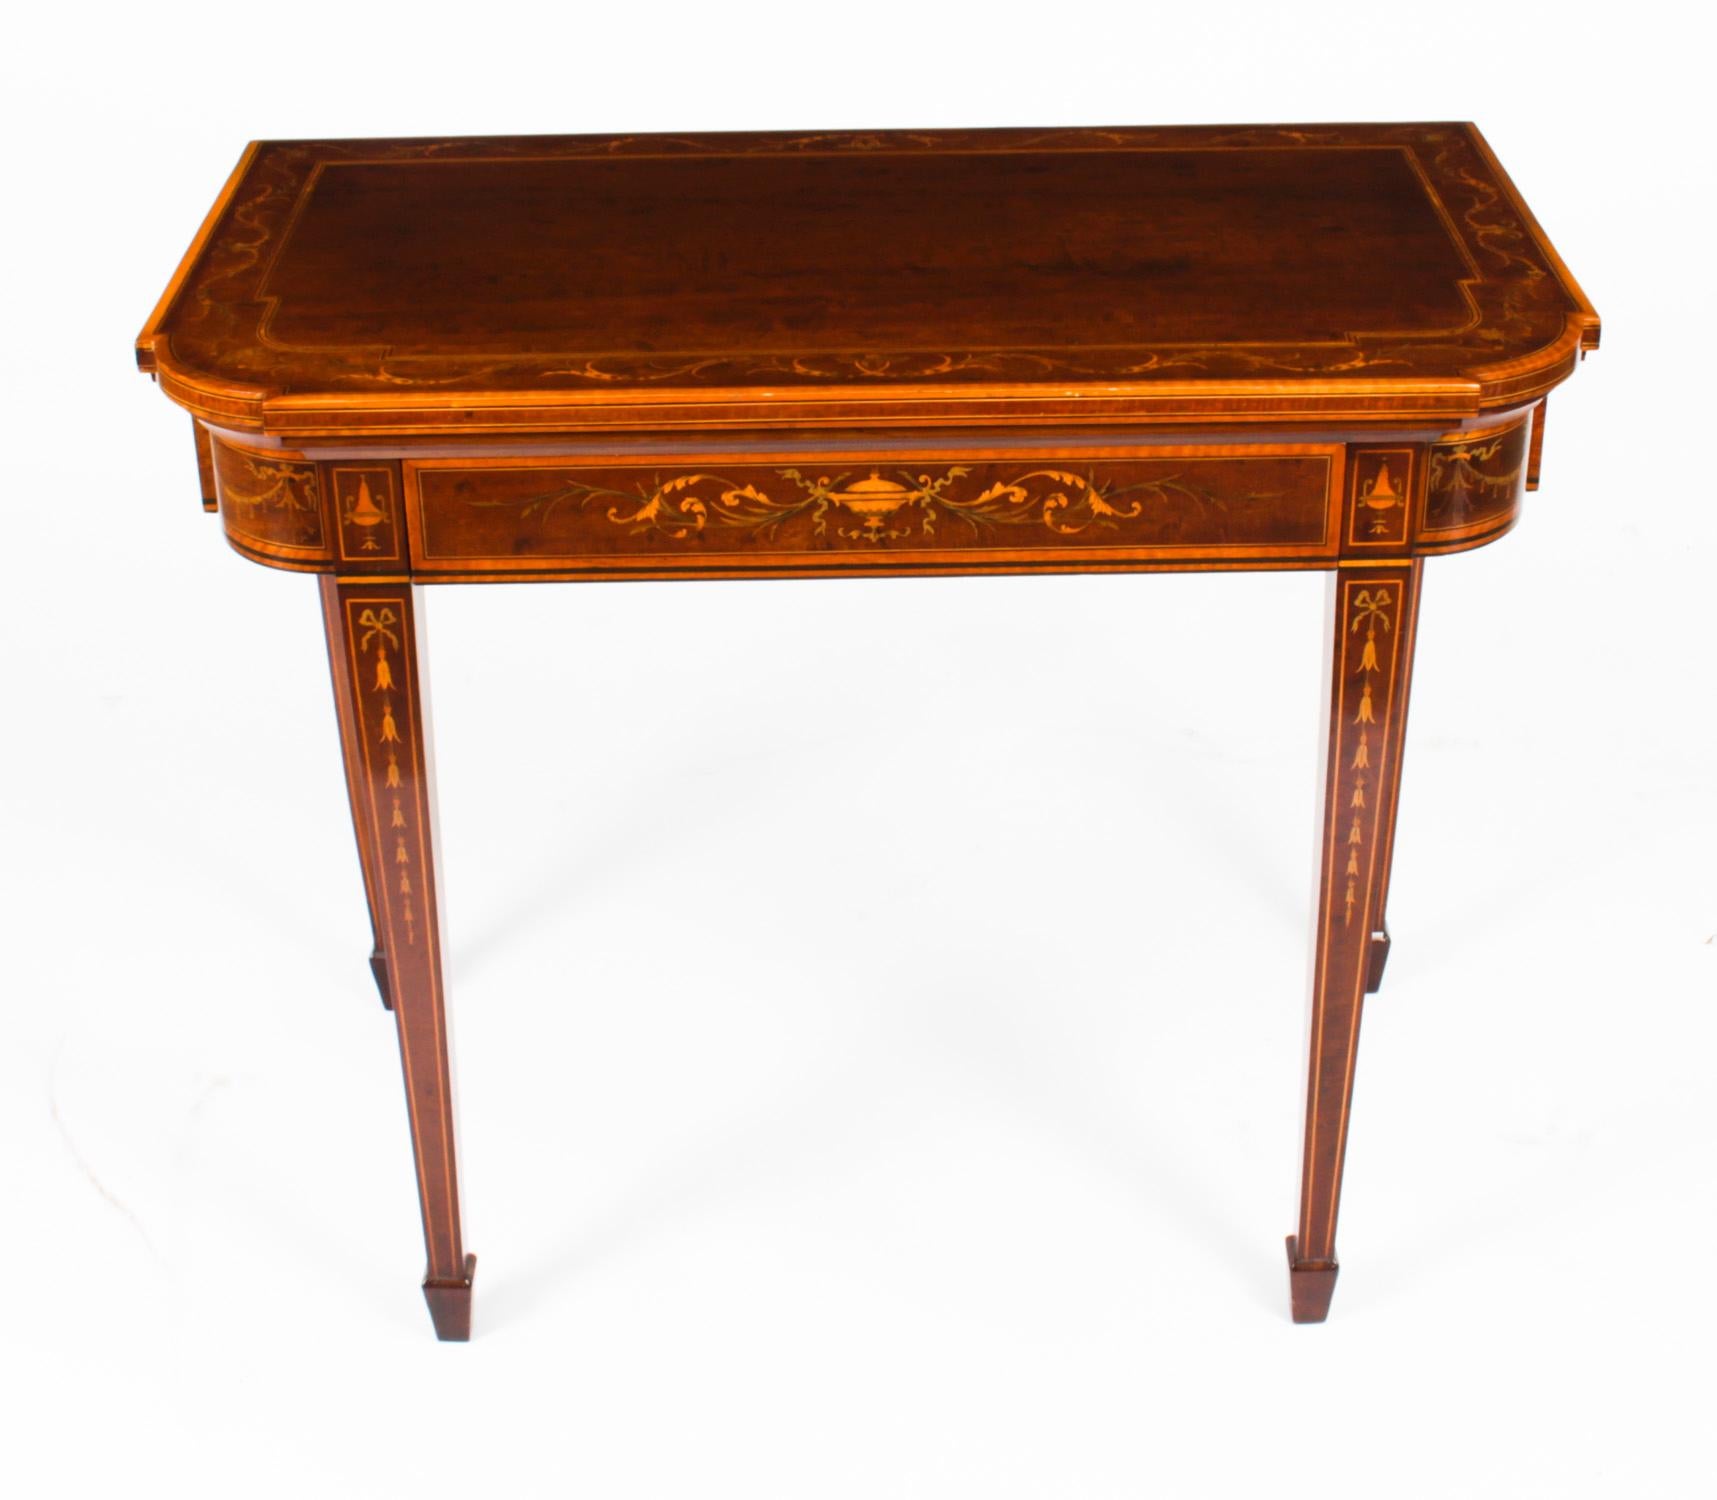 Dies ist eine fabelhafte antike viktorianische Mahagoni, Satinholz und Intarsien Spieltisch in der Art von Edwards & Roberts, um 1860 in Datum.

Es ist aus schönem geflammtem Mahagoni und Satinholz gefertigt und mit eleganten Satinholzeinlagen und